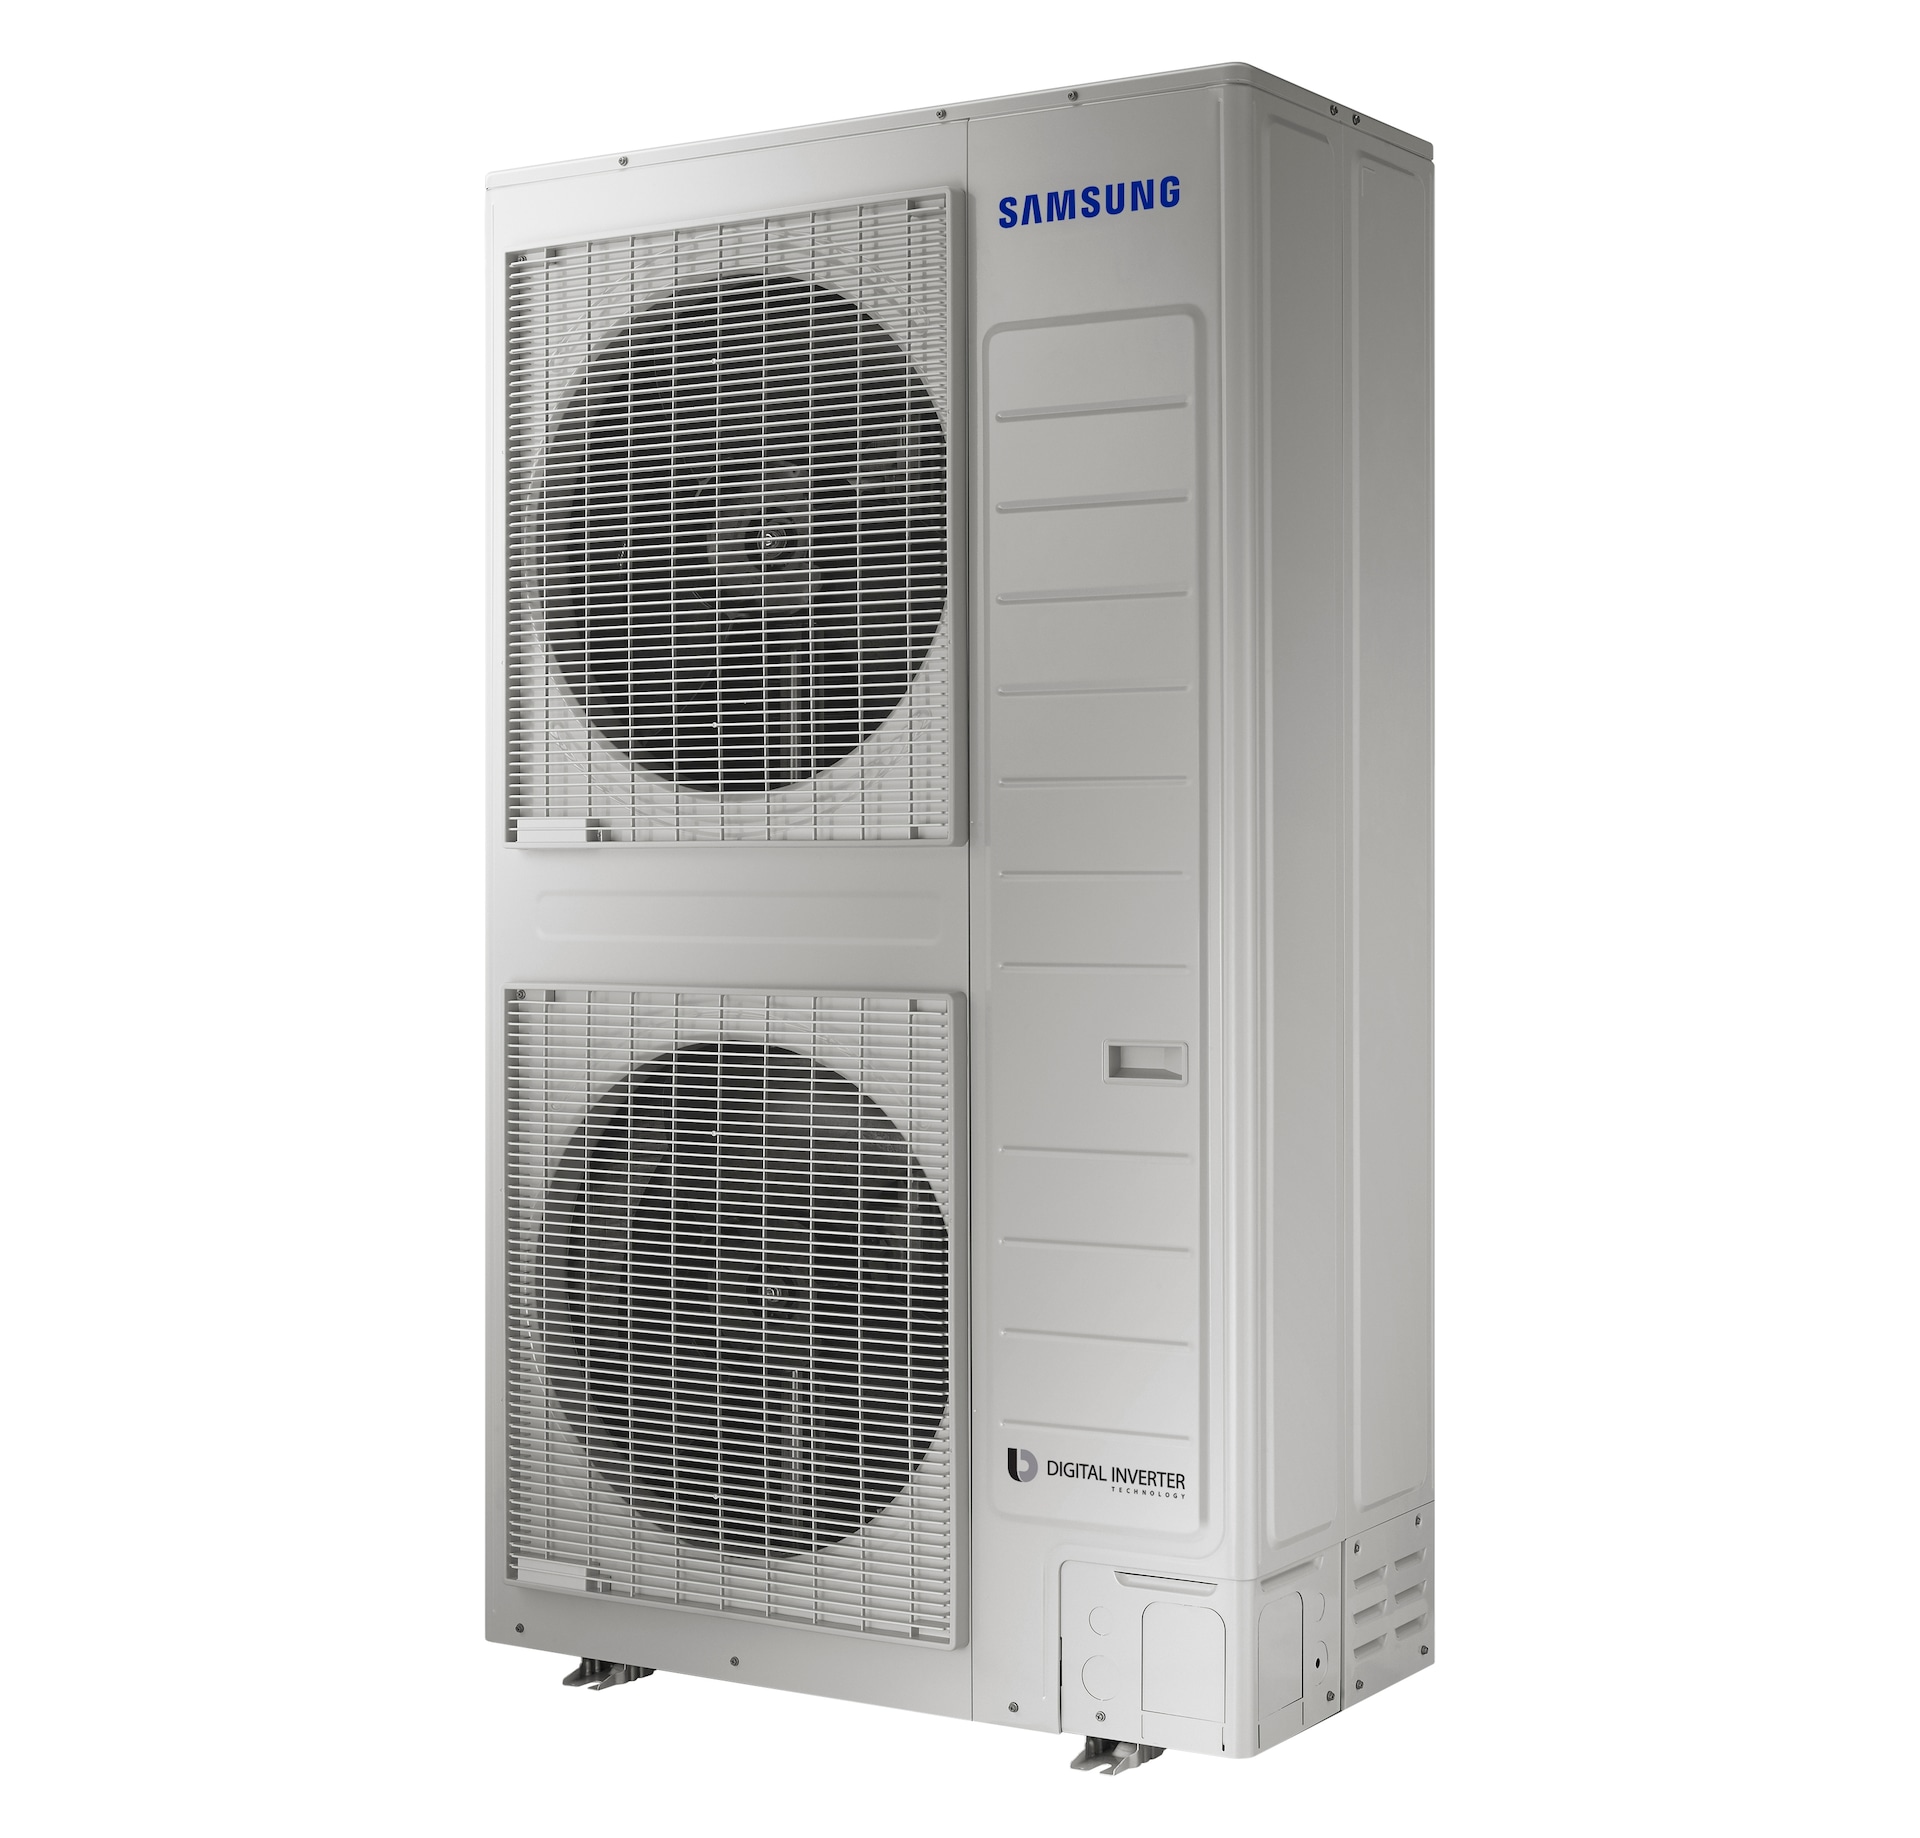 Aire acondicionado de Samsung Clima Cuidado del aire VRF DVM S Eco